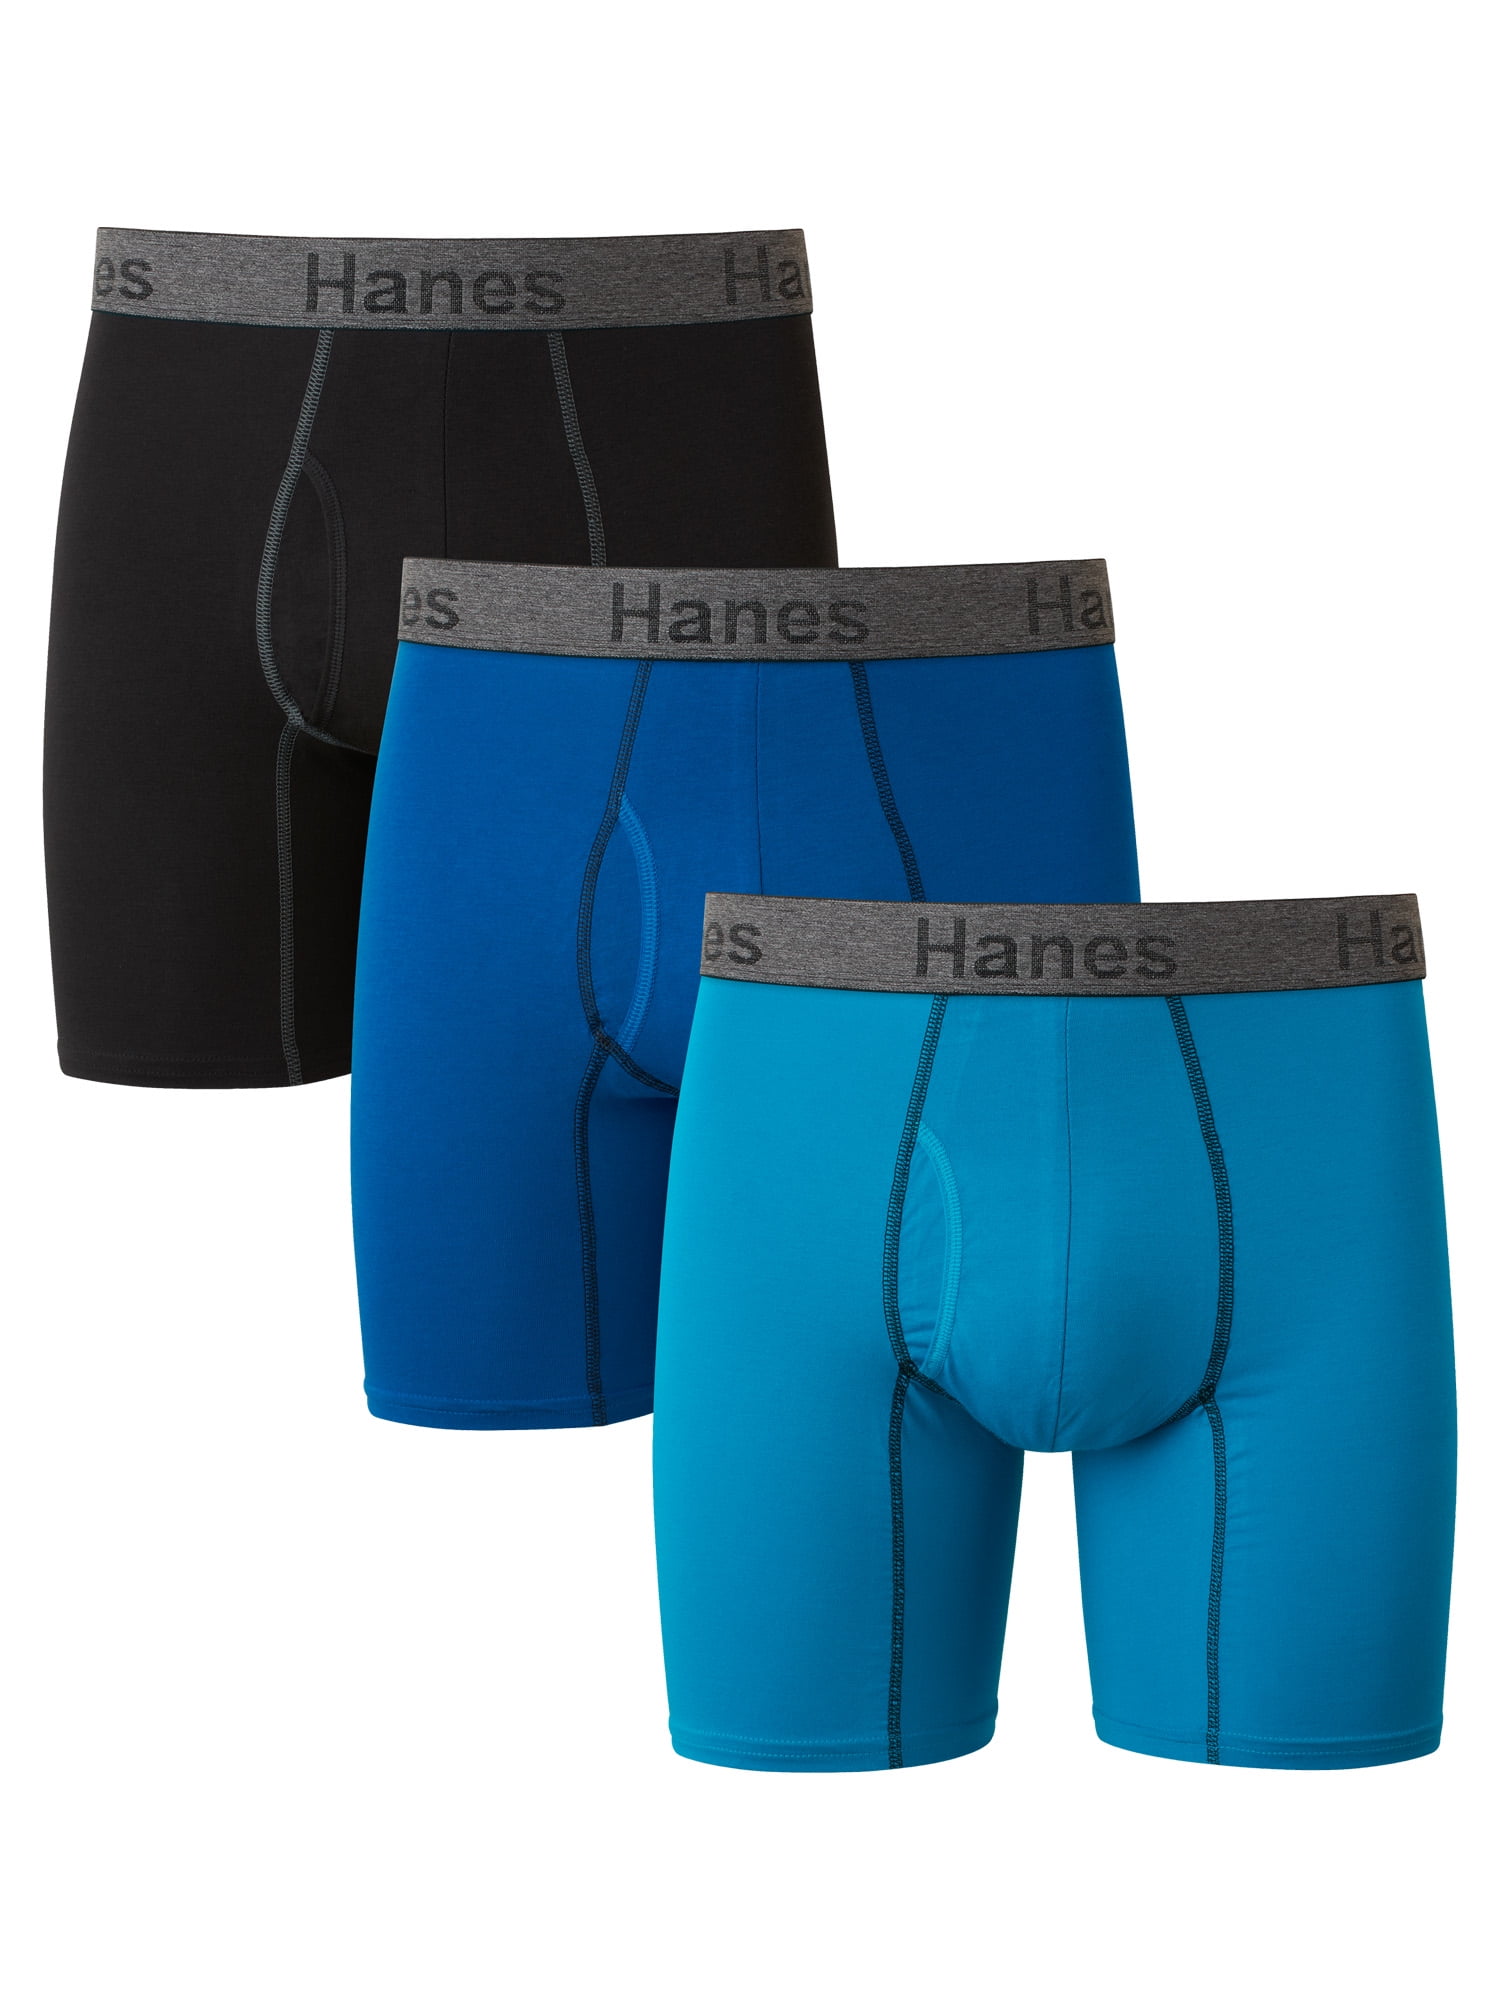 Hanes Premium Men's Comfort Flex Fit Boxer Briefs 3pk - Blue - ShopStyle